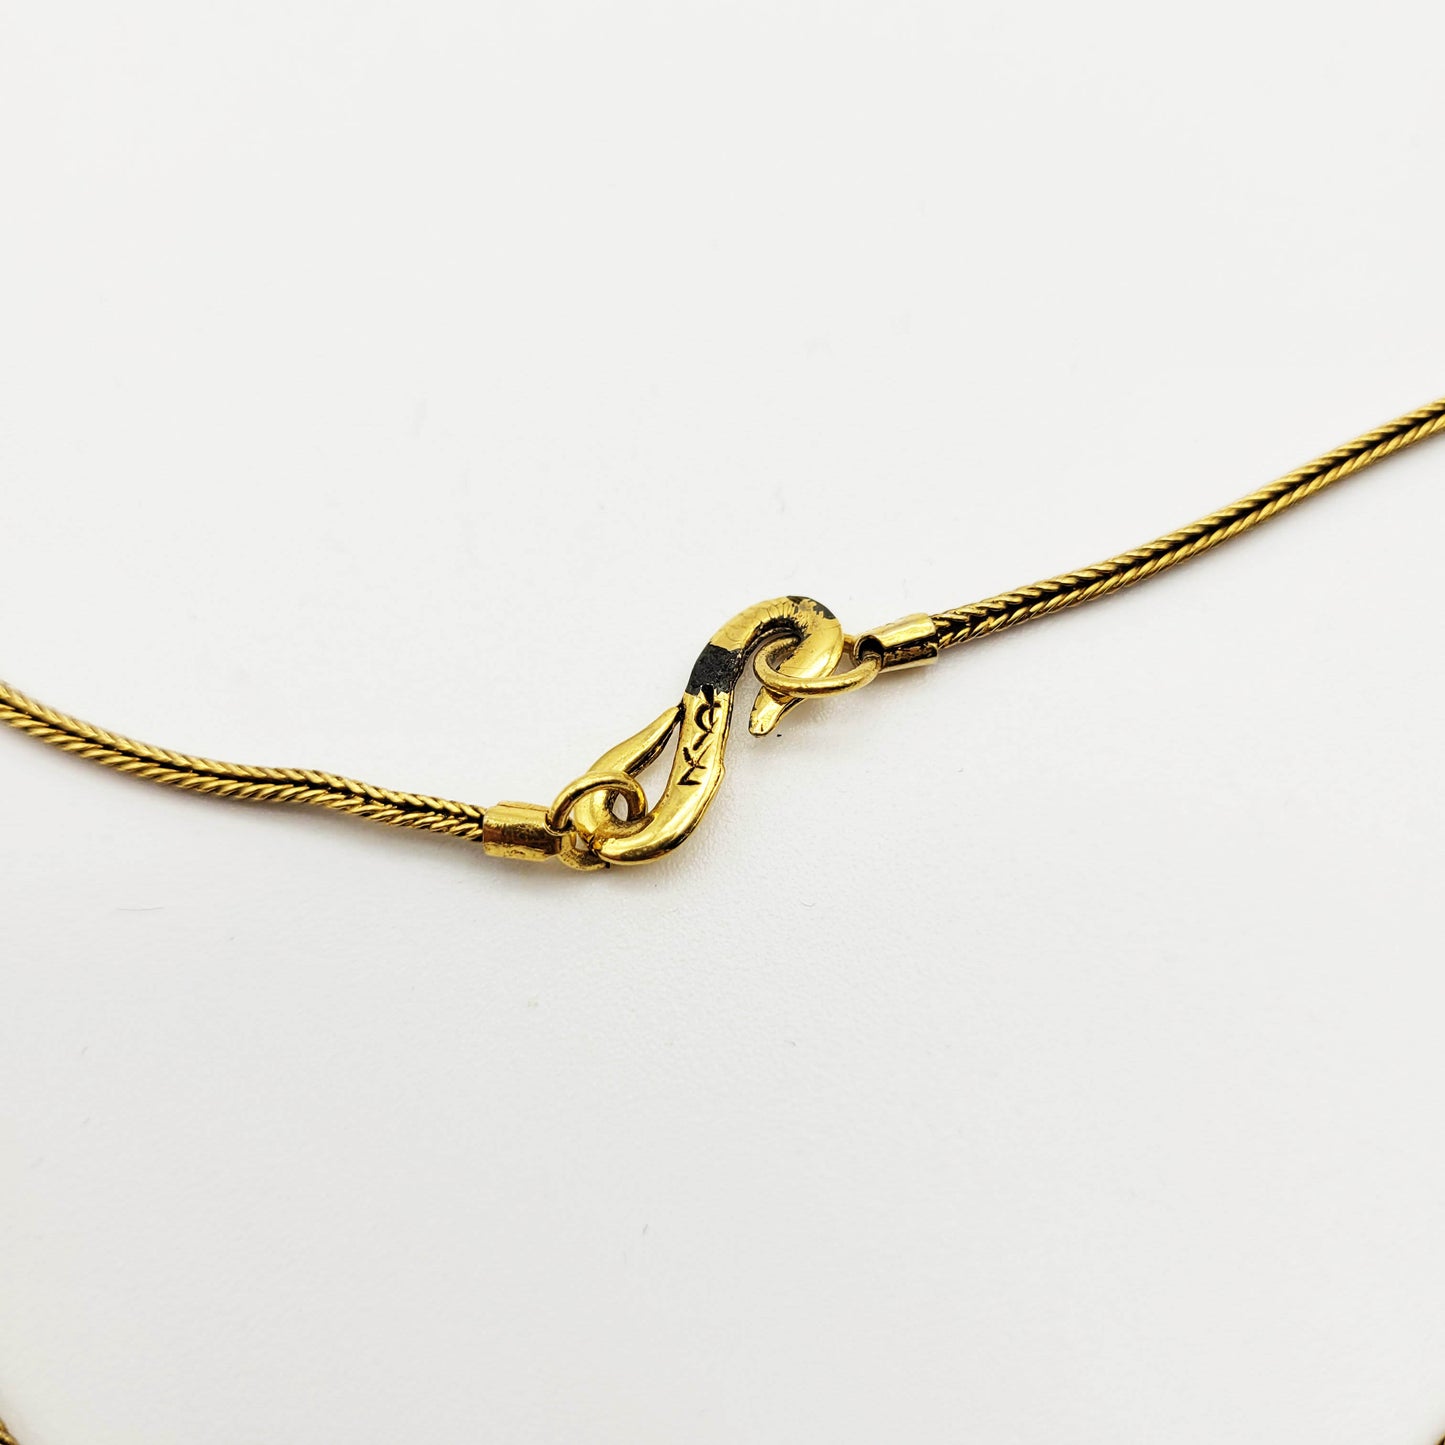 Vintage Yves Saint Laurent butterfly pendant necklace